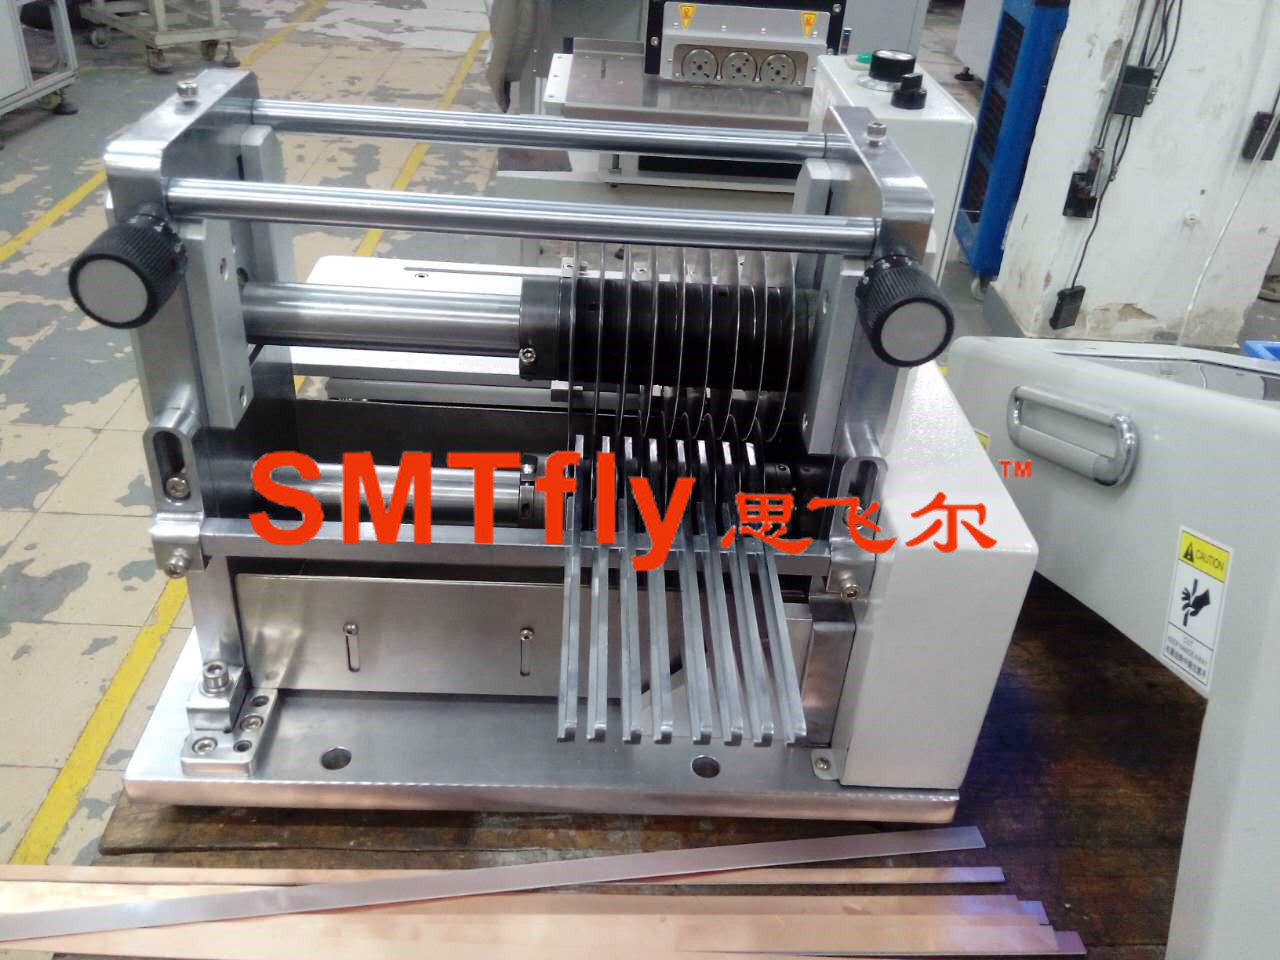 Multitool PCB Cutter Equipment,SMTfly-1SN